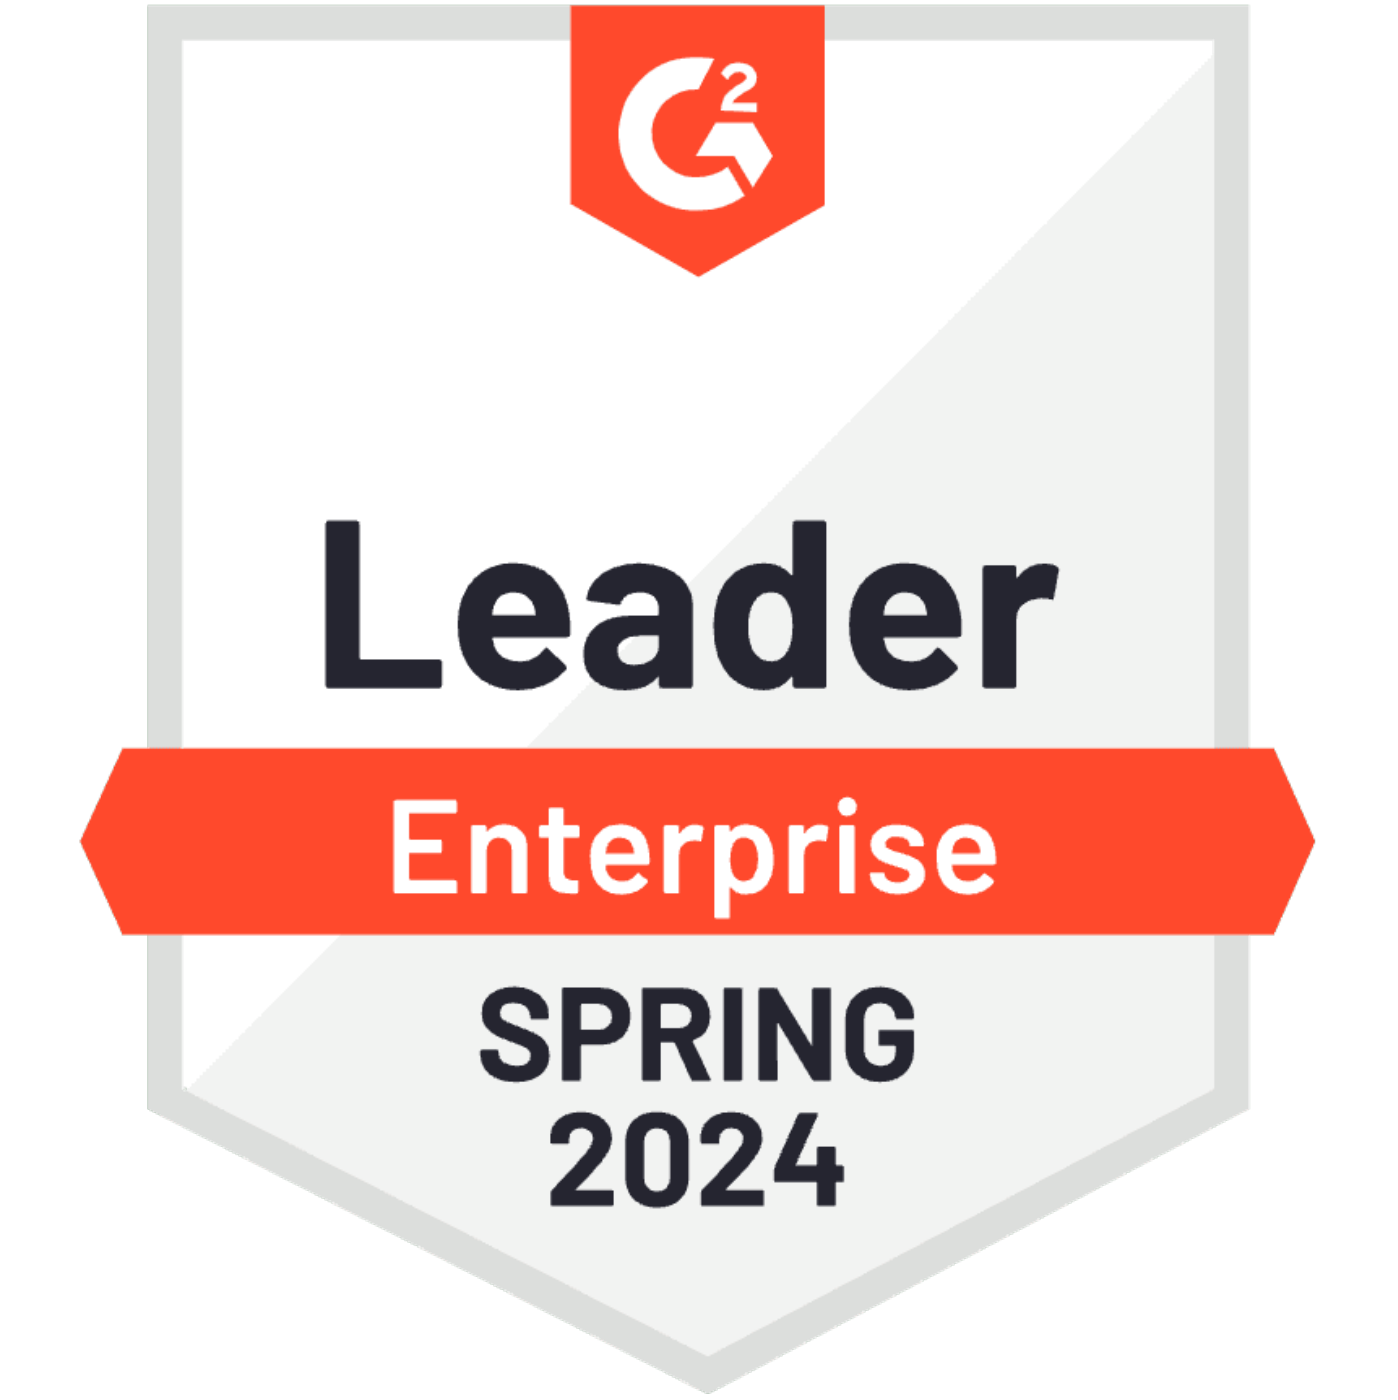 G2_Leader_Enterprise_Spring_2024_600_600